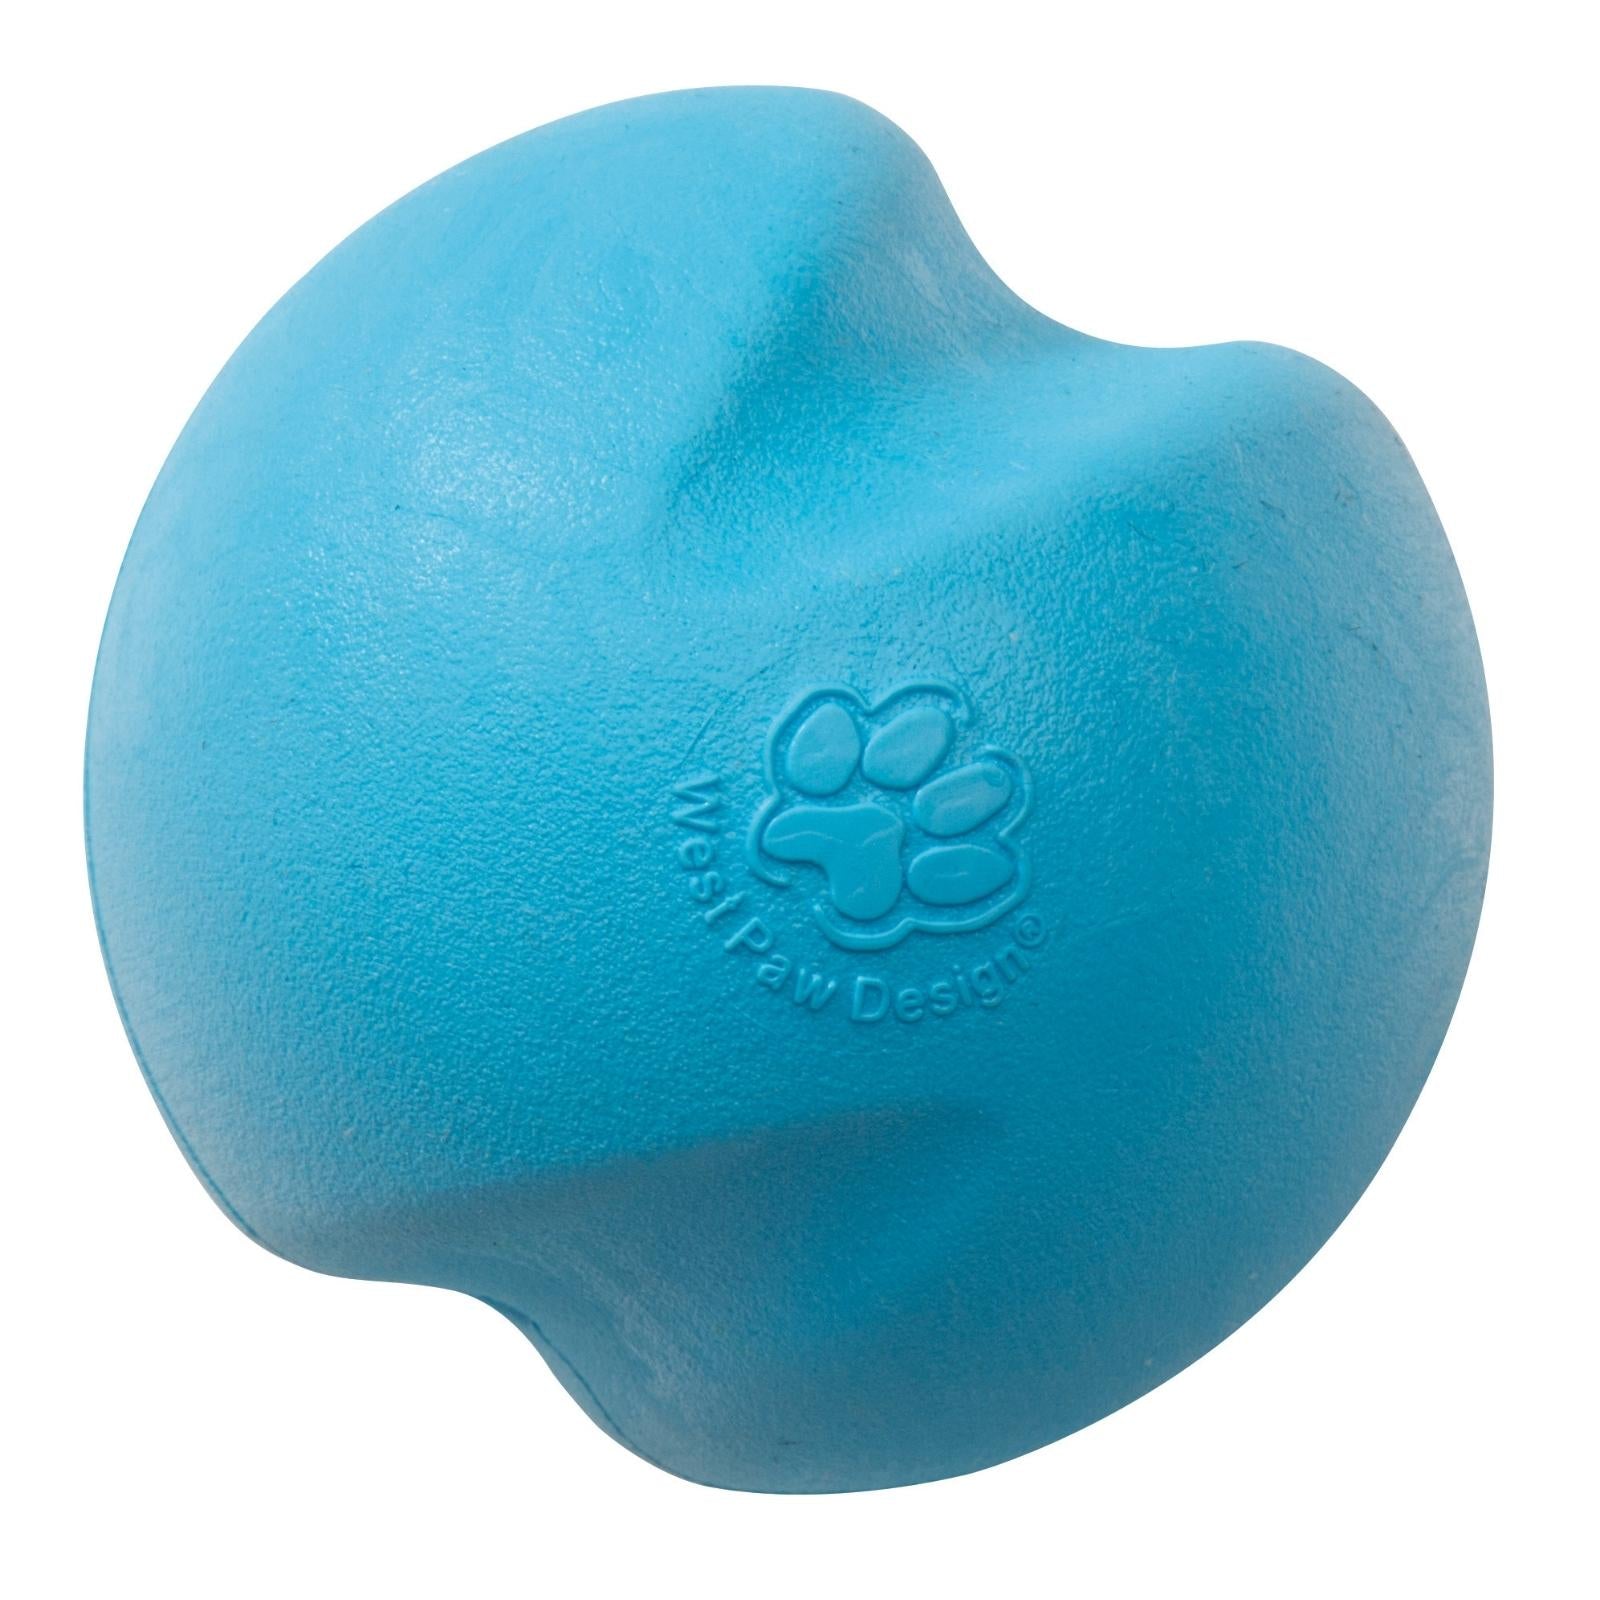 JIVE de West Paw® color Azul - Pelota de Juguete para Perros